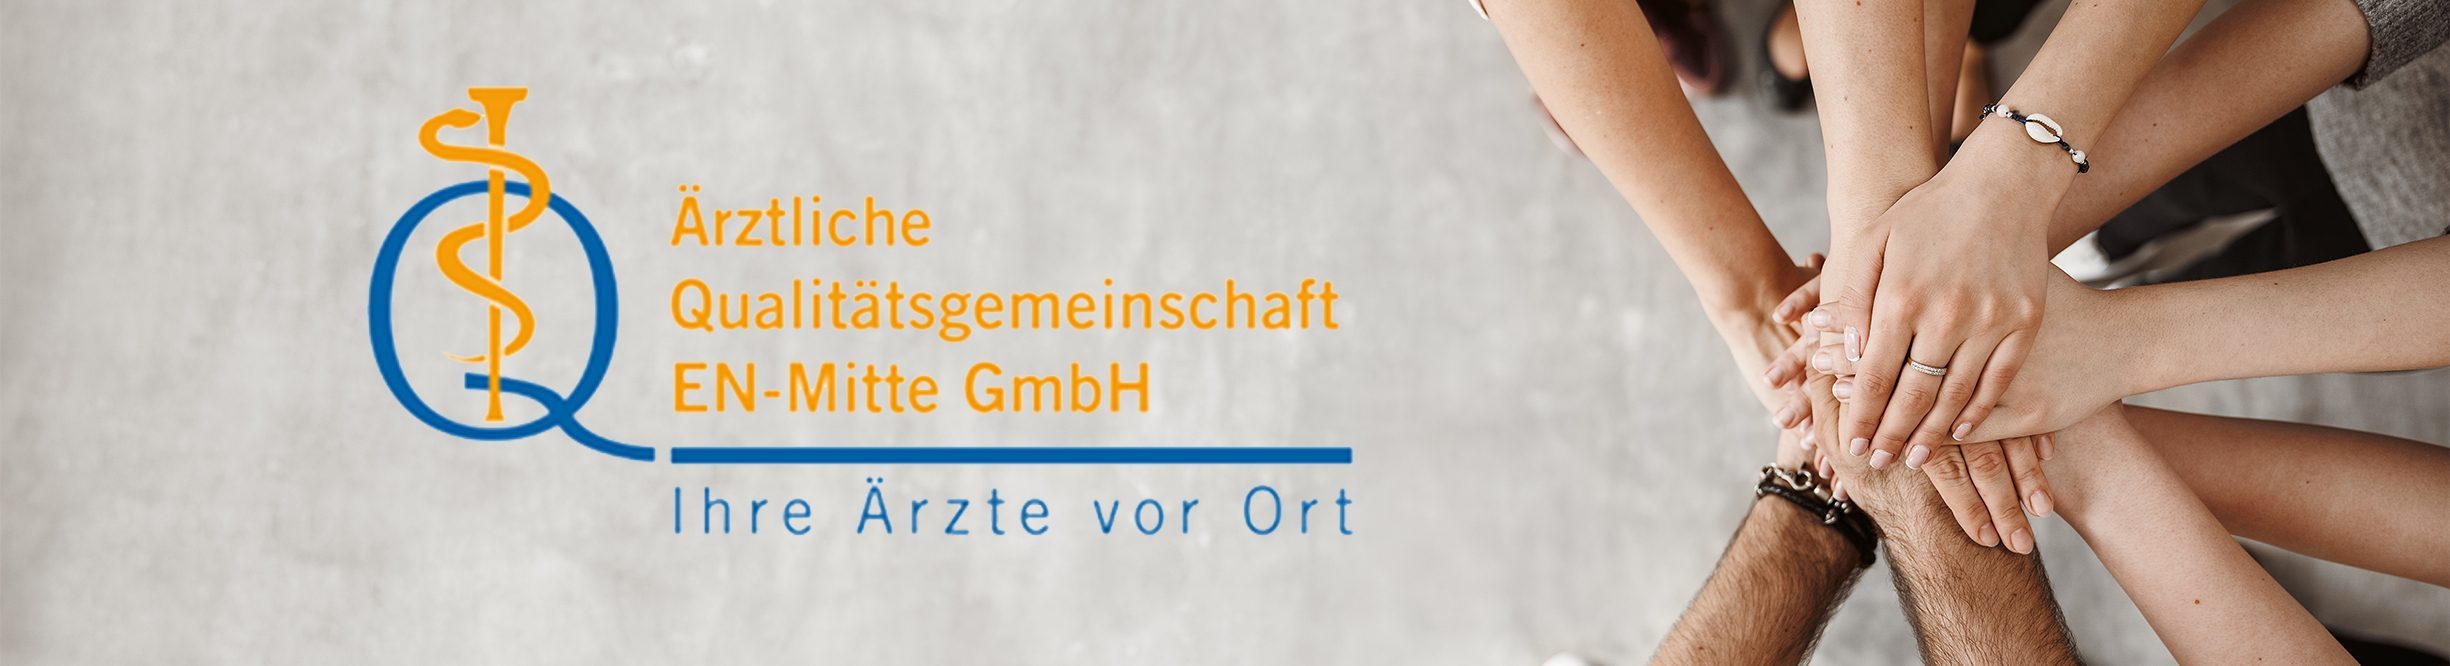 Ärztliche Qualitätsgemeinschaft EN-Mitte GmbH